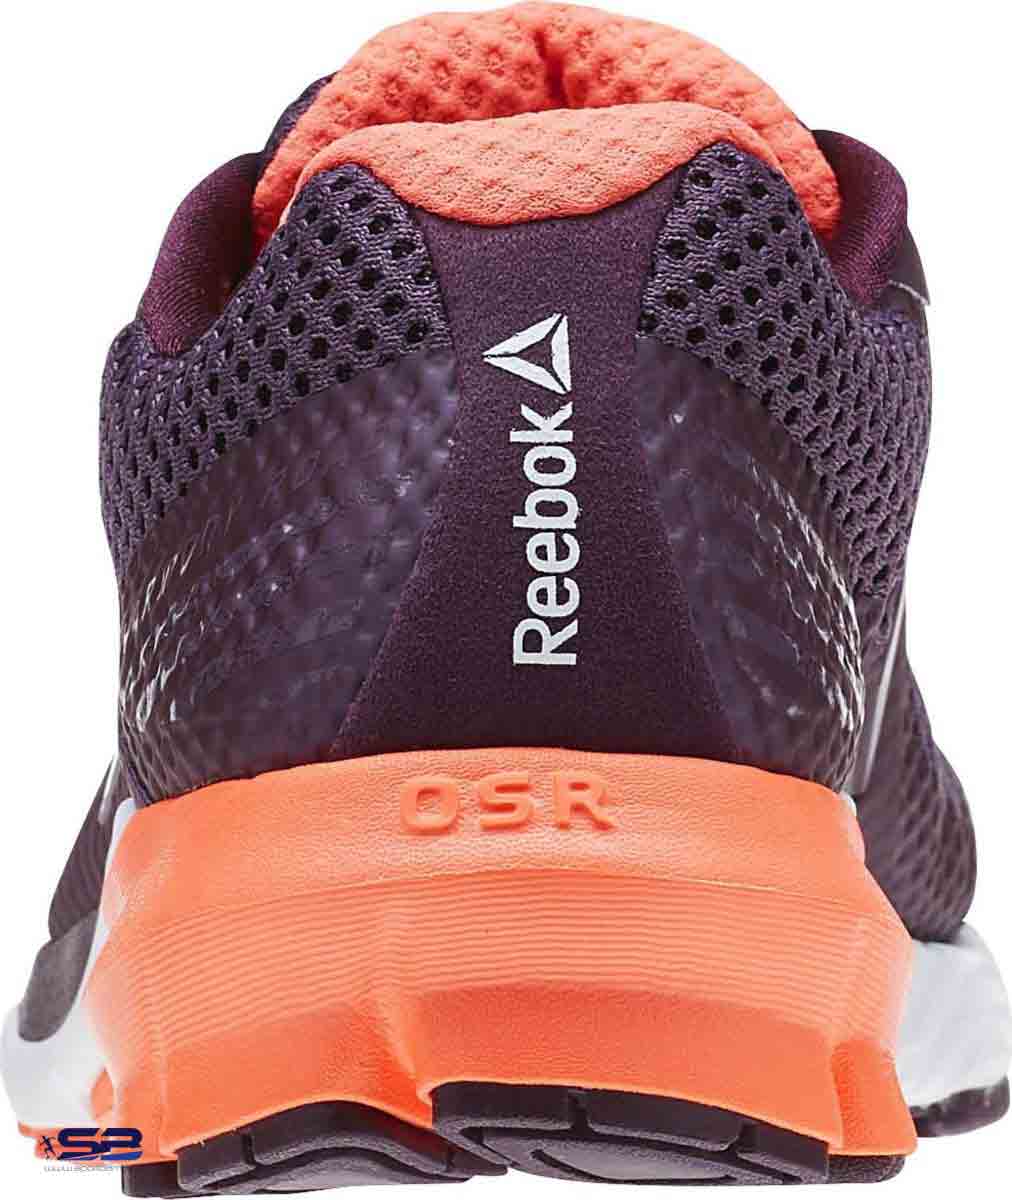  خرید  کفش کتانی اورجینال ریباک     Reebok Running Shoes BD5146  